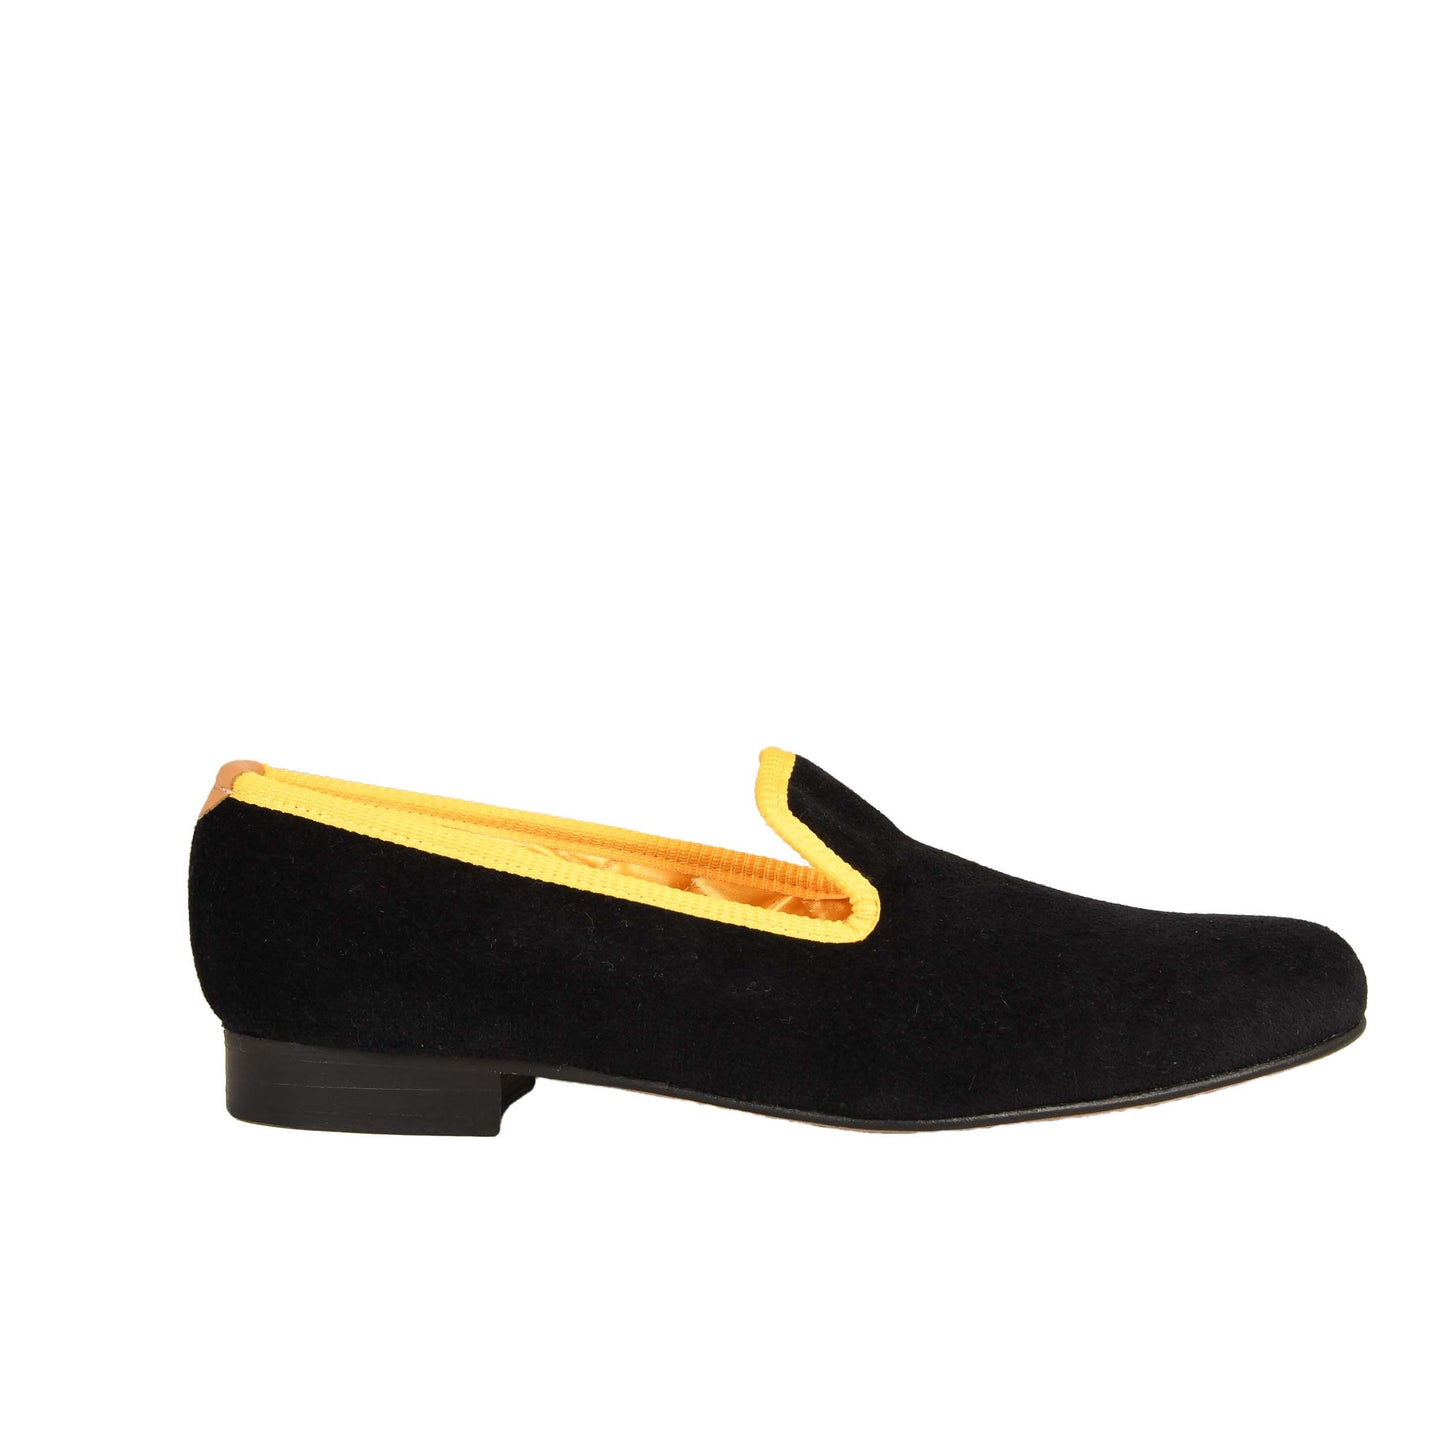 Tofflor i svart sammet med gul kant från Bowhill & Eliott med lädersula